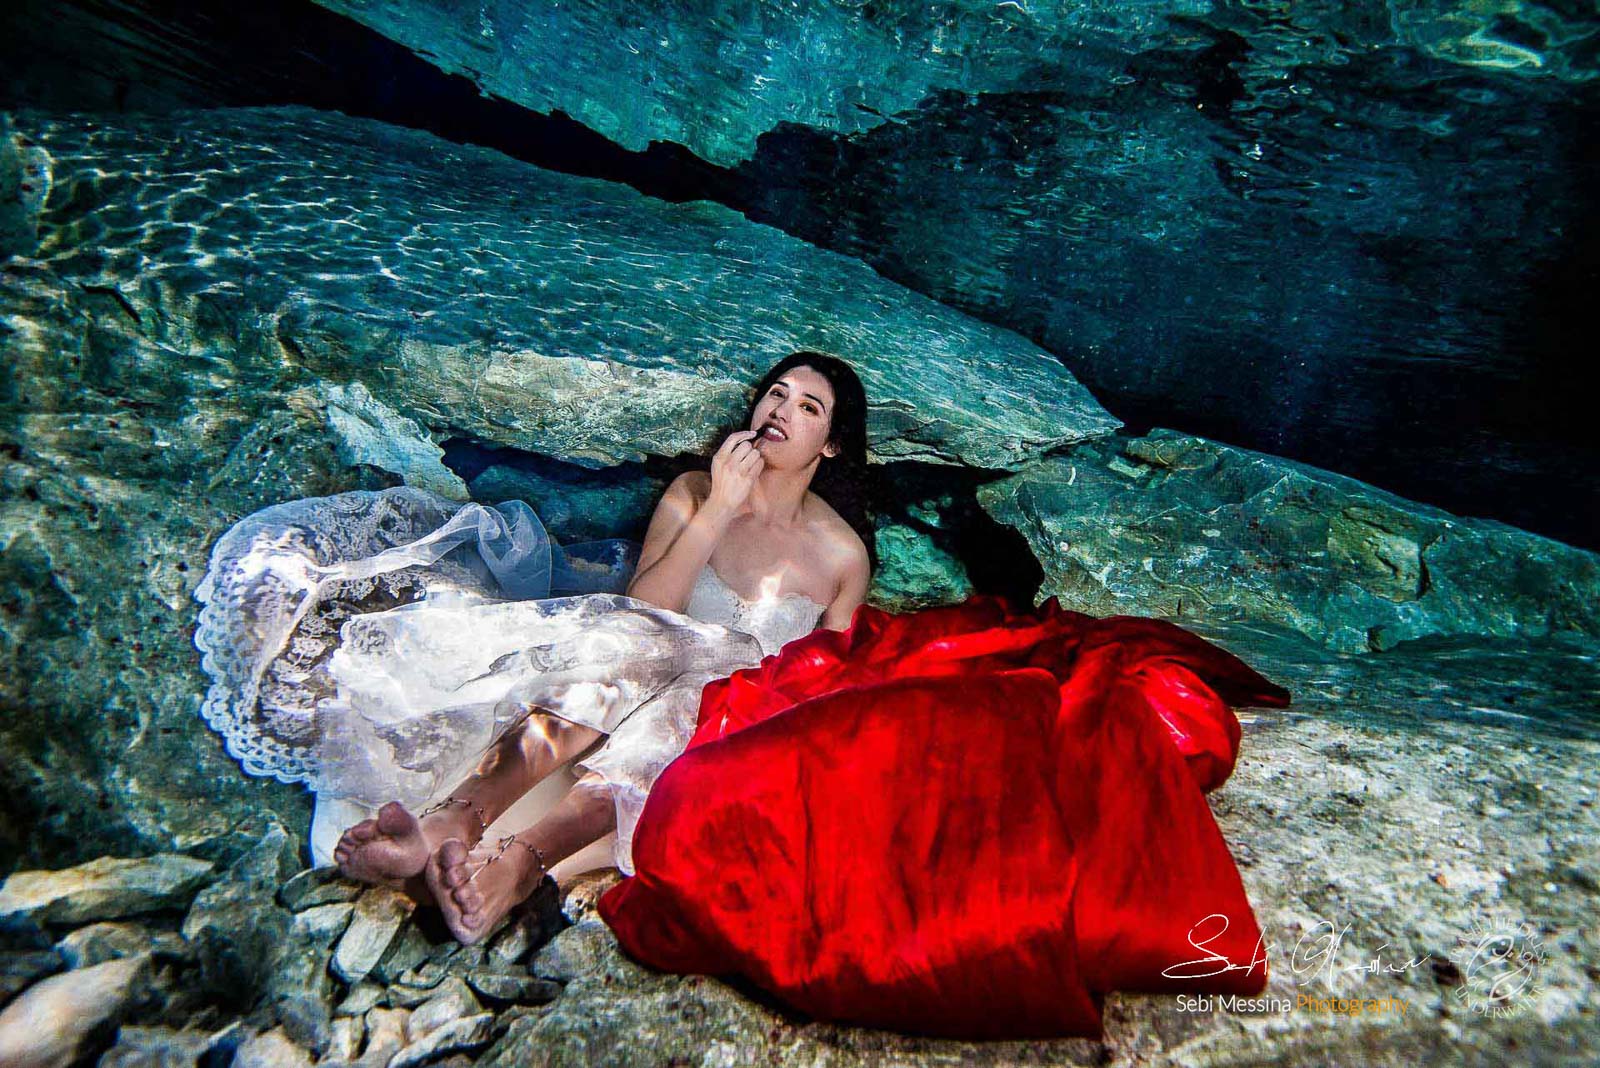 Trash The Dress in Mexico – Sebi Messina Photography